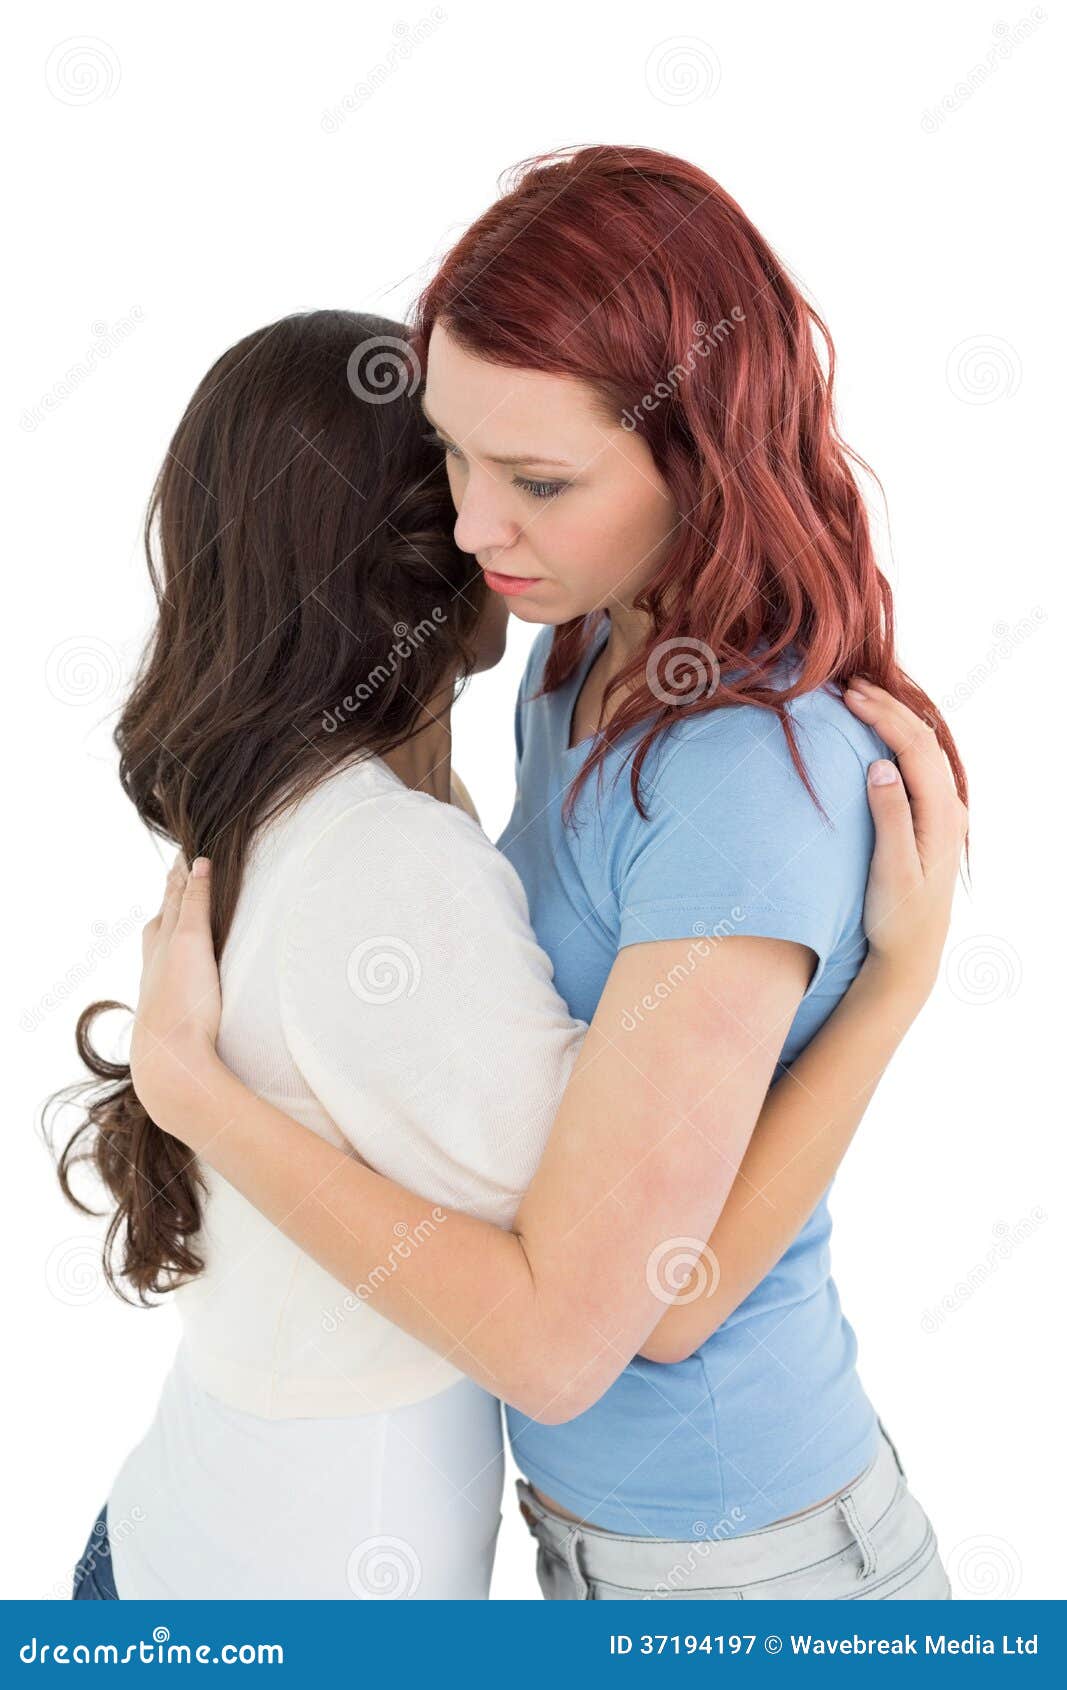 Обняв разбор. Женщина обнимает сбоку. Две женщины обнимают друг друга. Две девушки обнимаются. Подруги обнимаются на белом фоне.